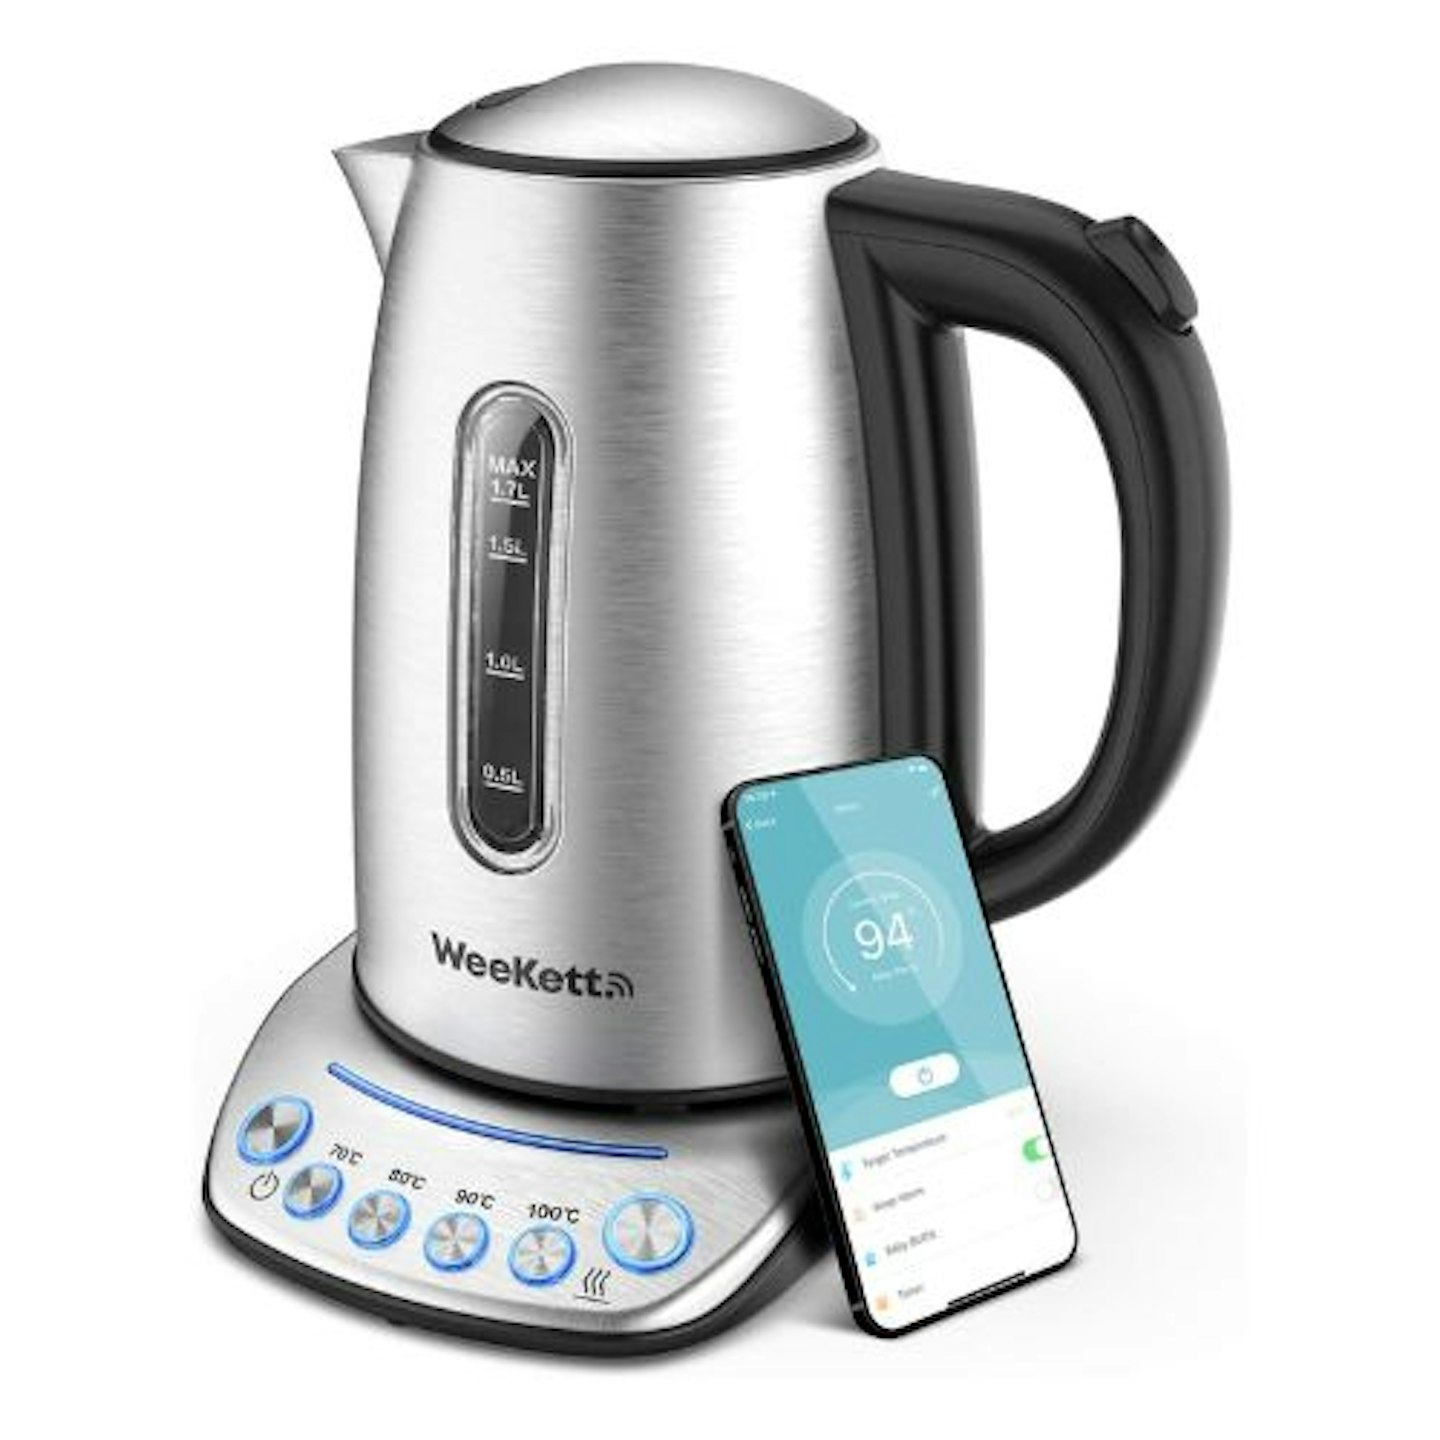  Alexa kettle smart Kettle by WeeKett 